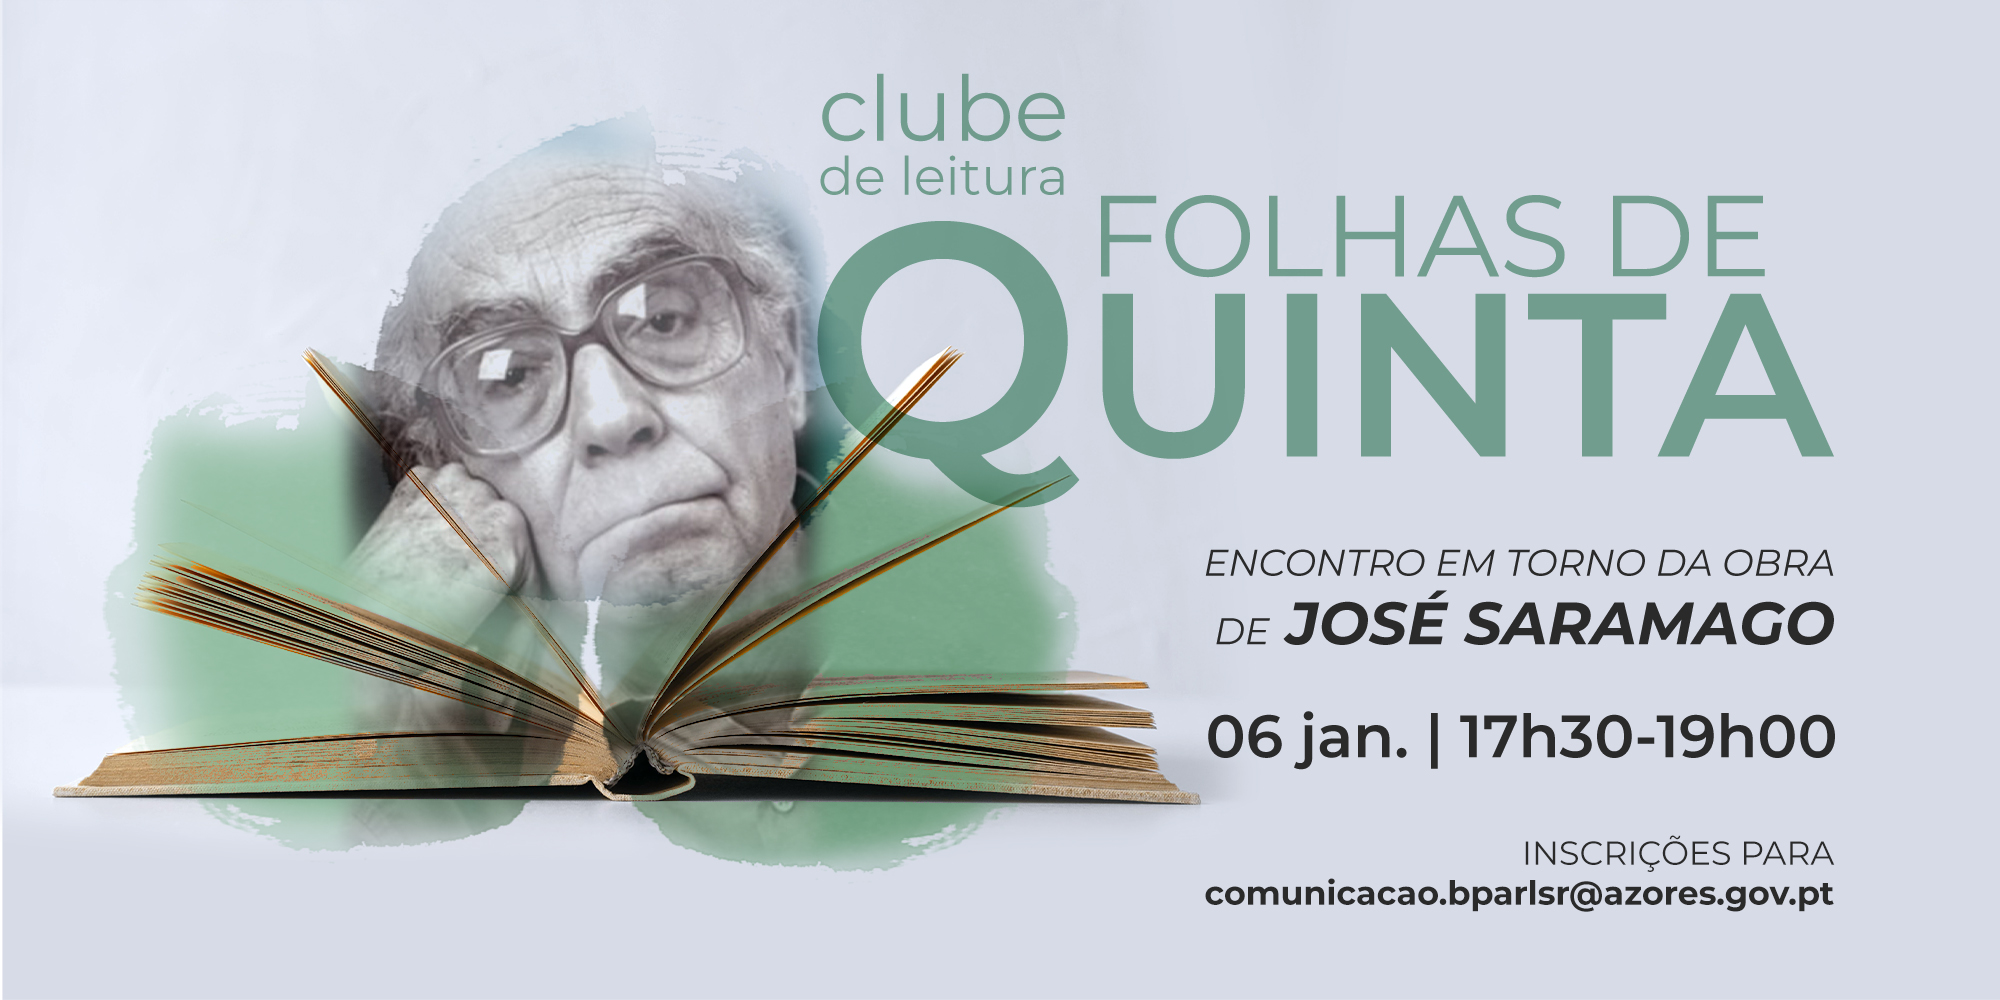 Clube de Leitura “Folhas de Quinta”  “Encontro em torno da obra de José Saramago”